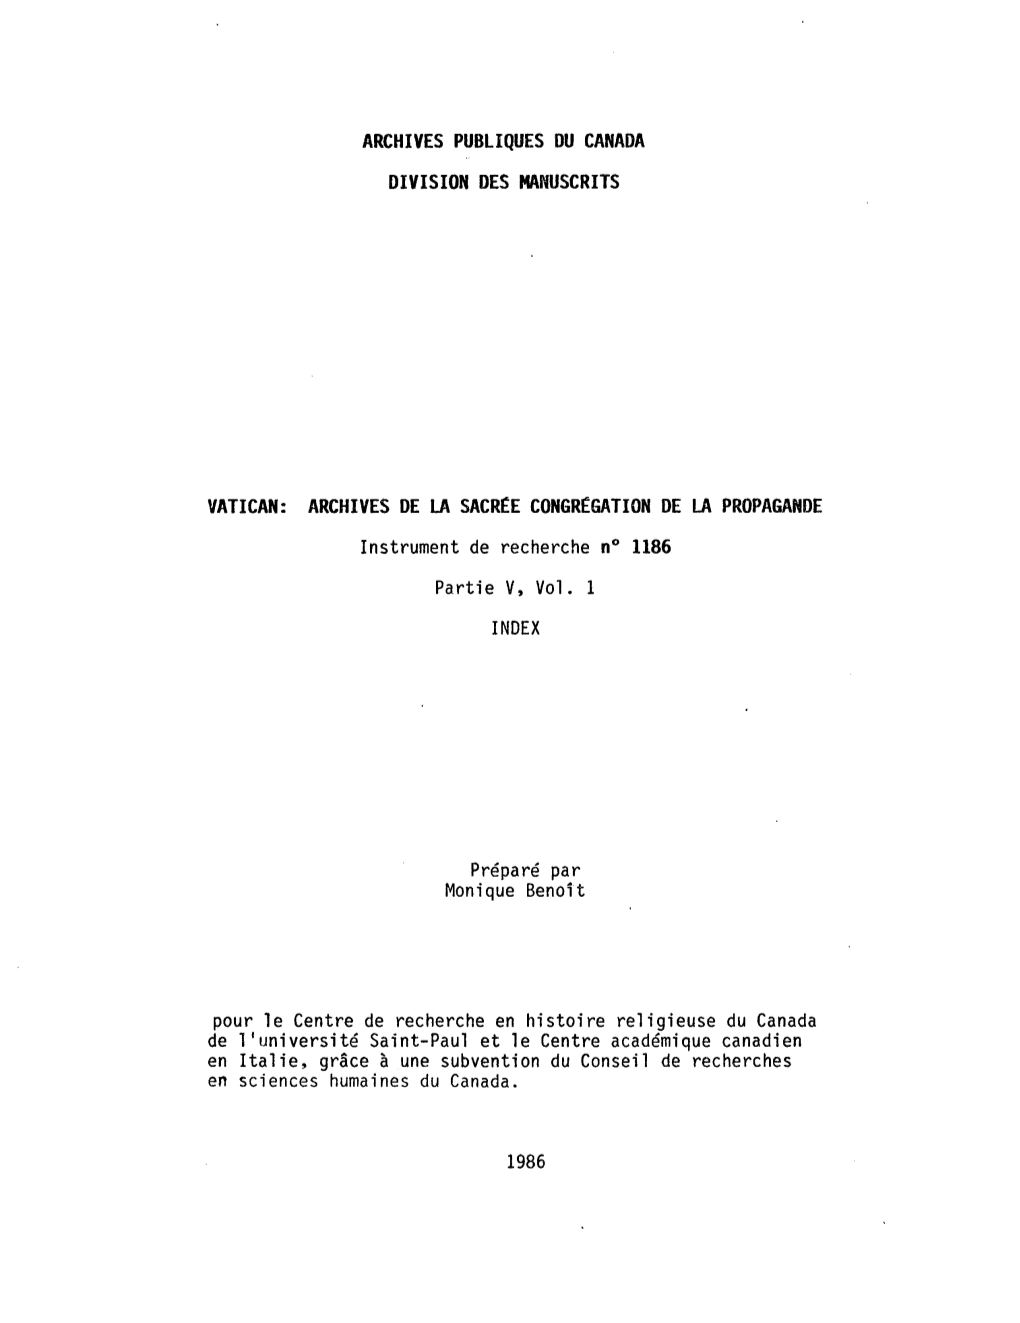 ARCHIVES DE LA SACR£E CONGR£GATION DE LA PROPAGANDE Instrument De Recherche N° 1186 Partie V, Vol